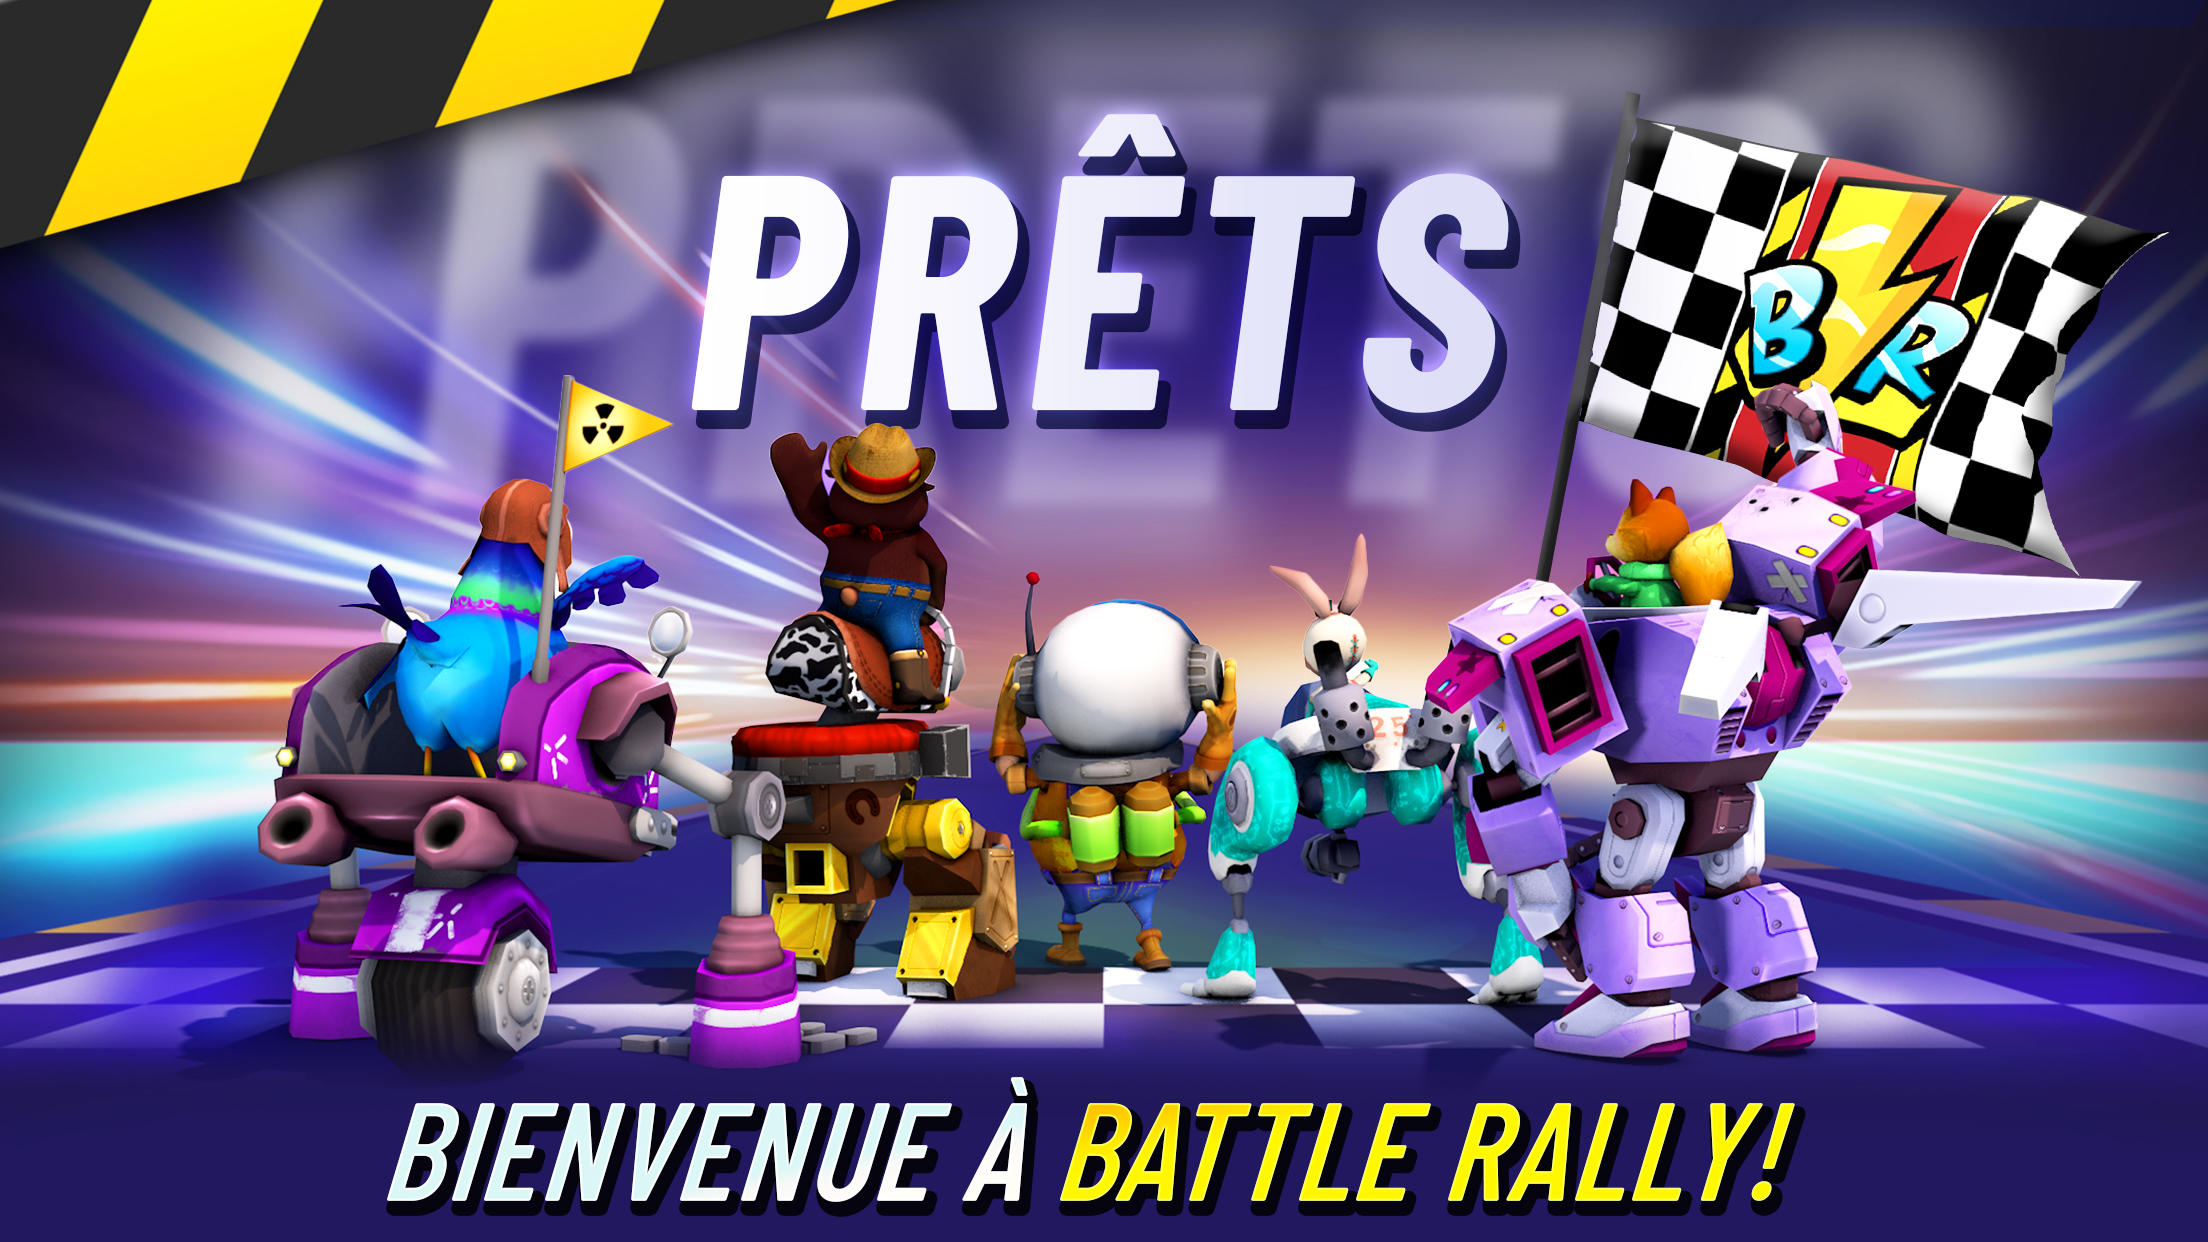 Screenshot 1 of Battle Rally 0.4.0